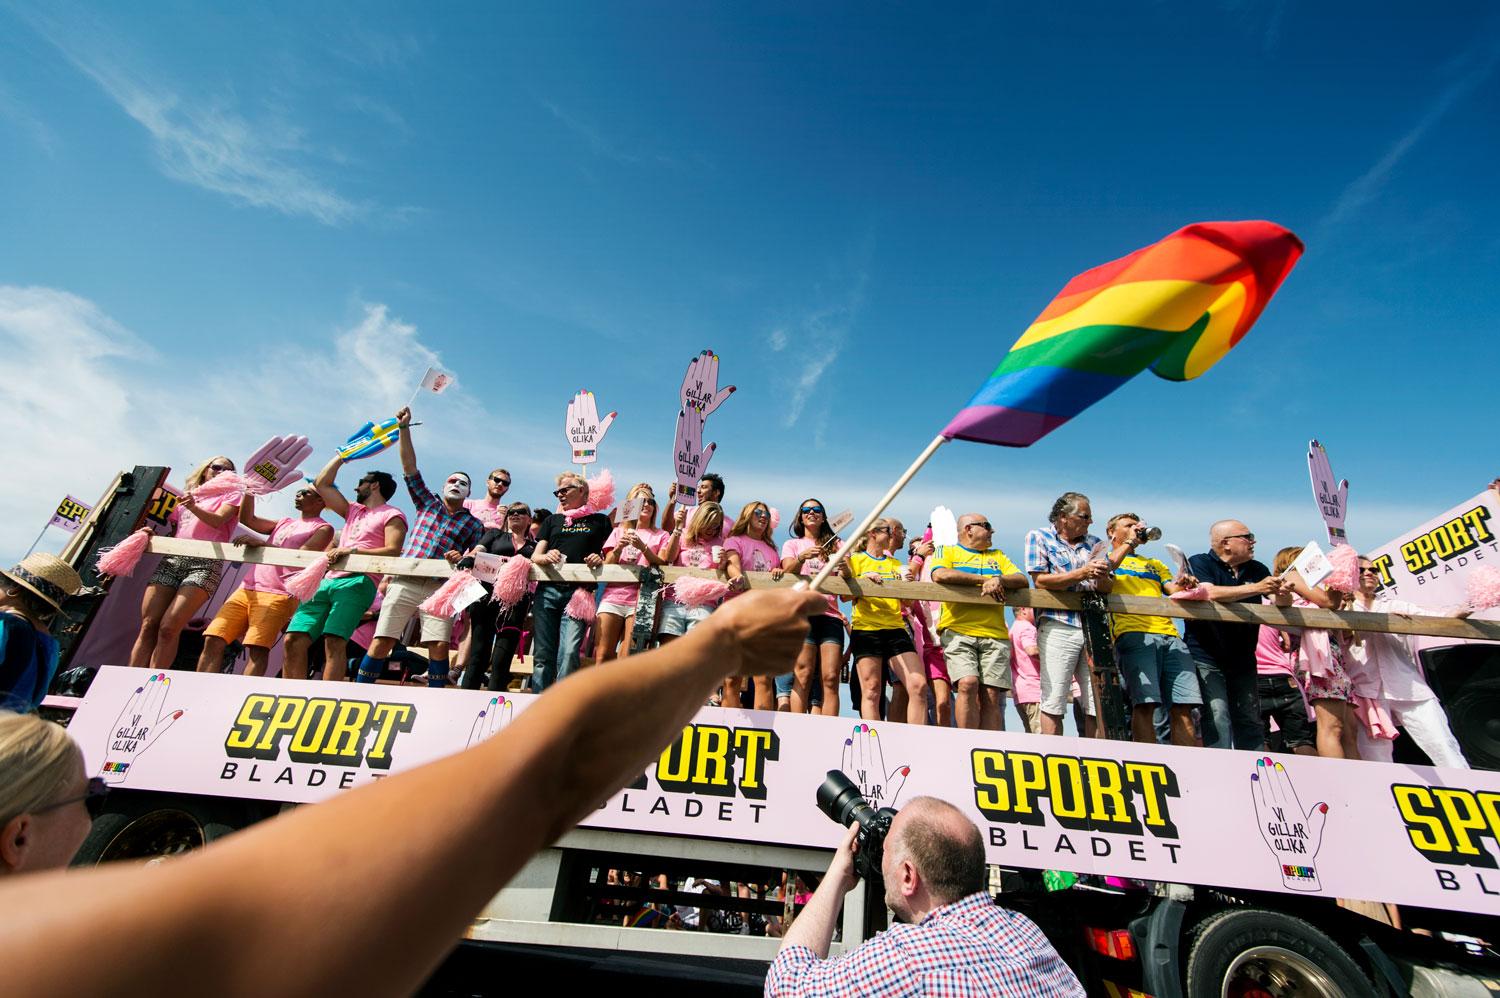 Sportbladet är med i Pride-paraden för tredje året i rad.